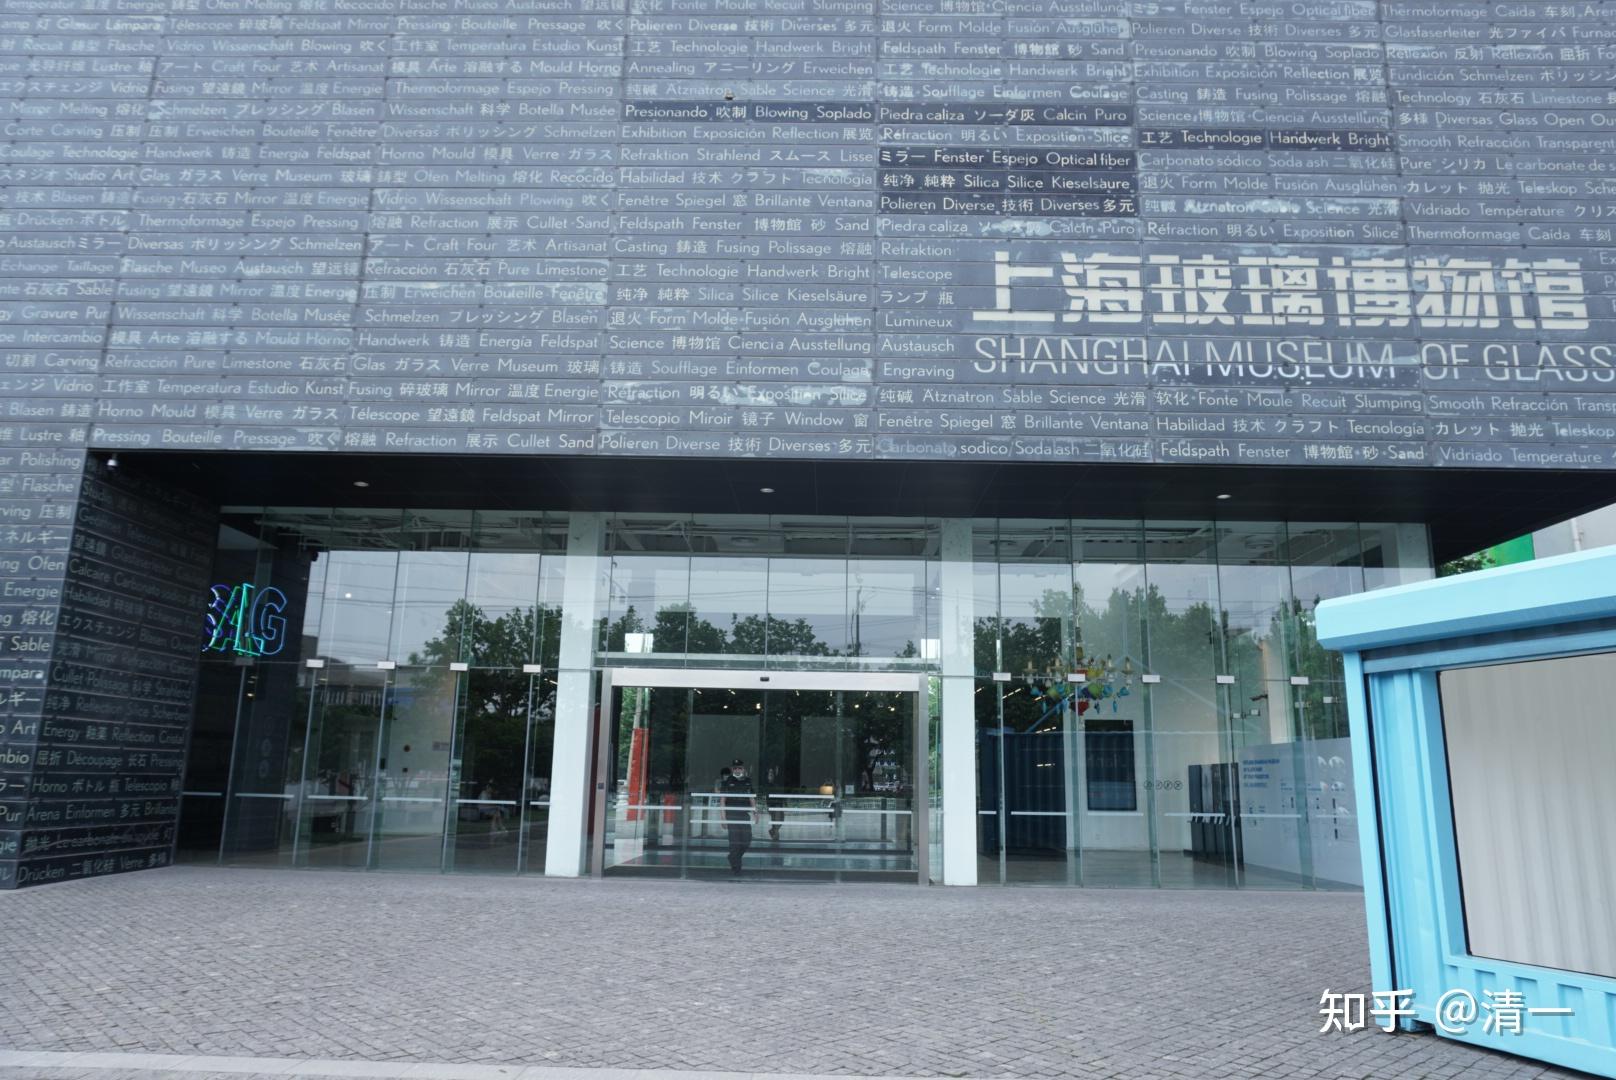 上海旅游攻略上海玻璃博物馆篇